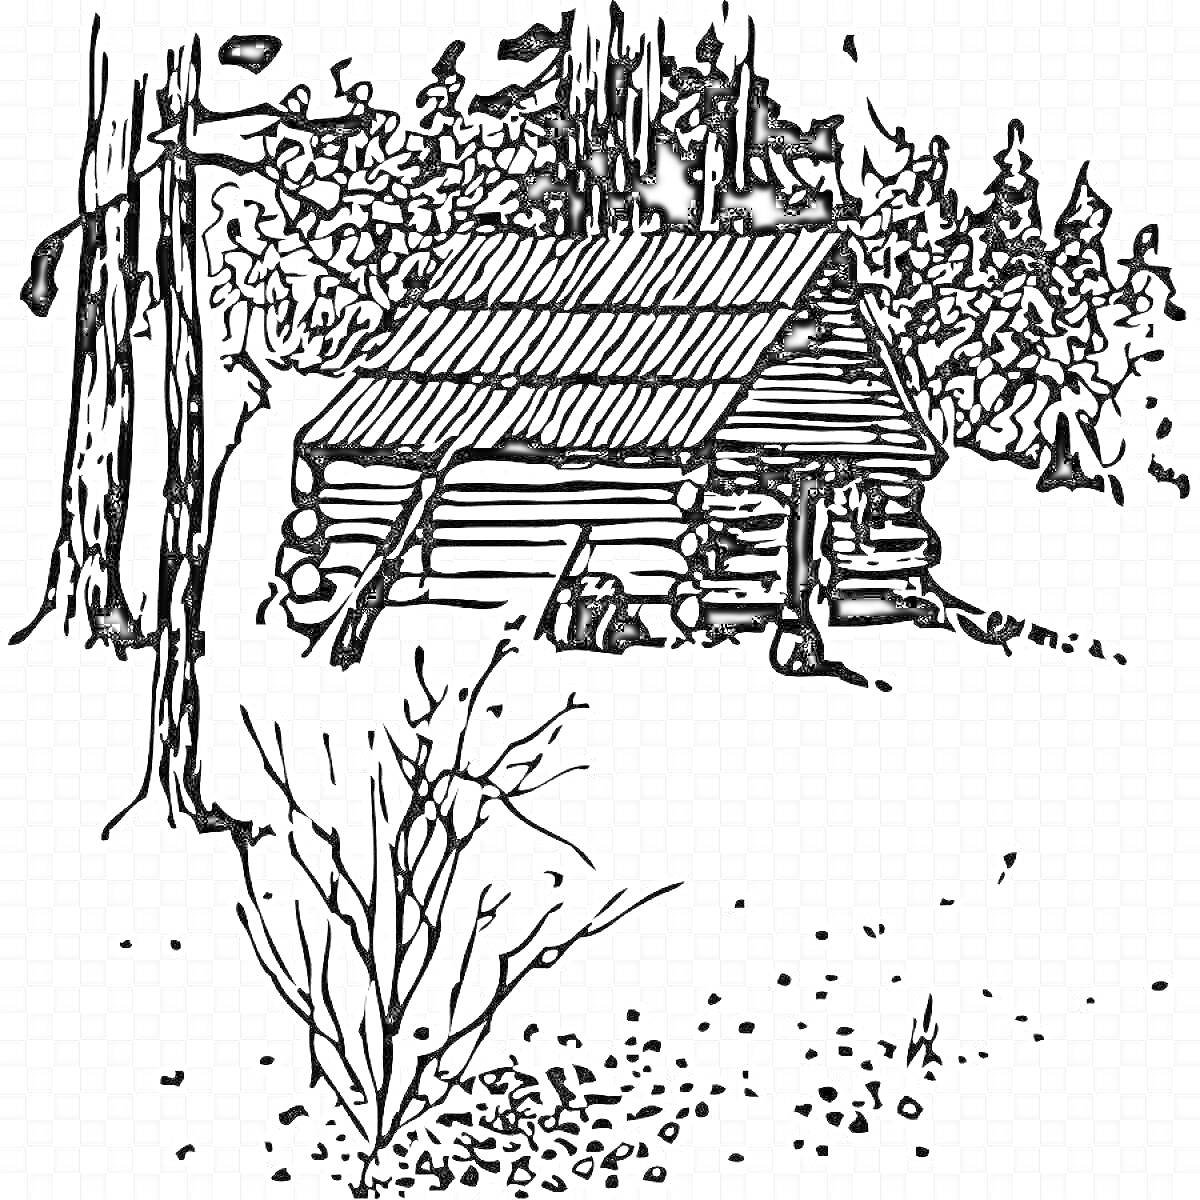 Ветхая землянка с бревенчатой крышей в лесу, окруженная деревьями и кустарниками